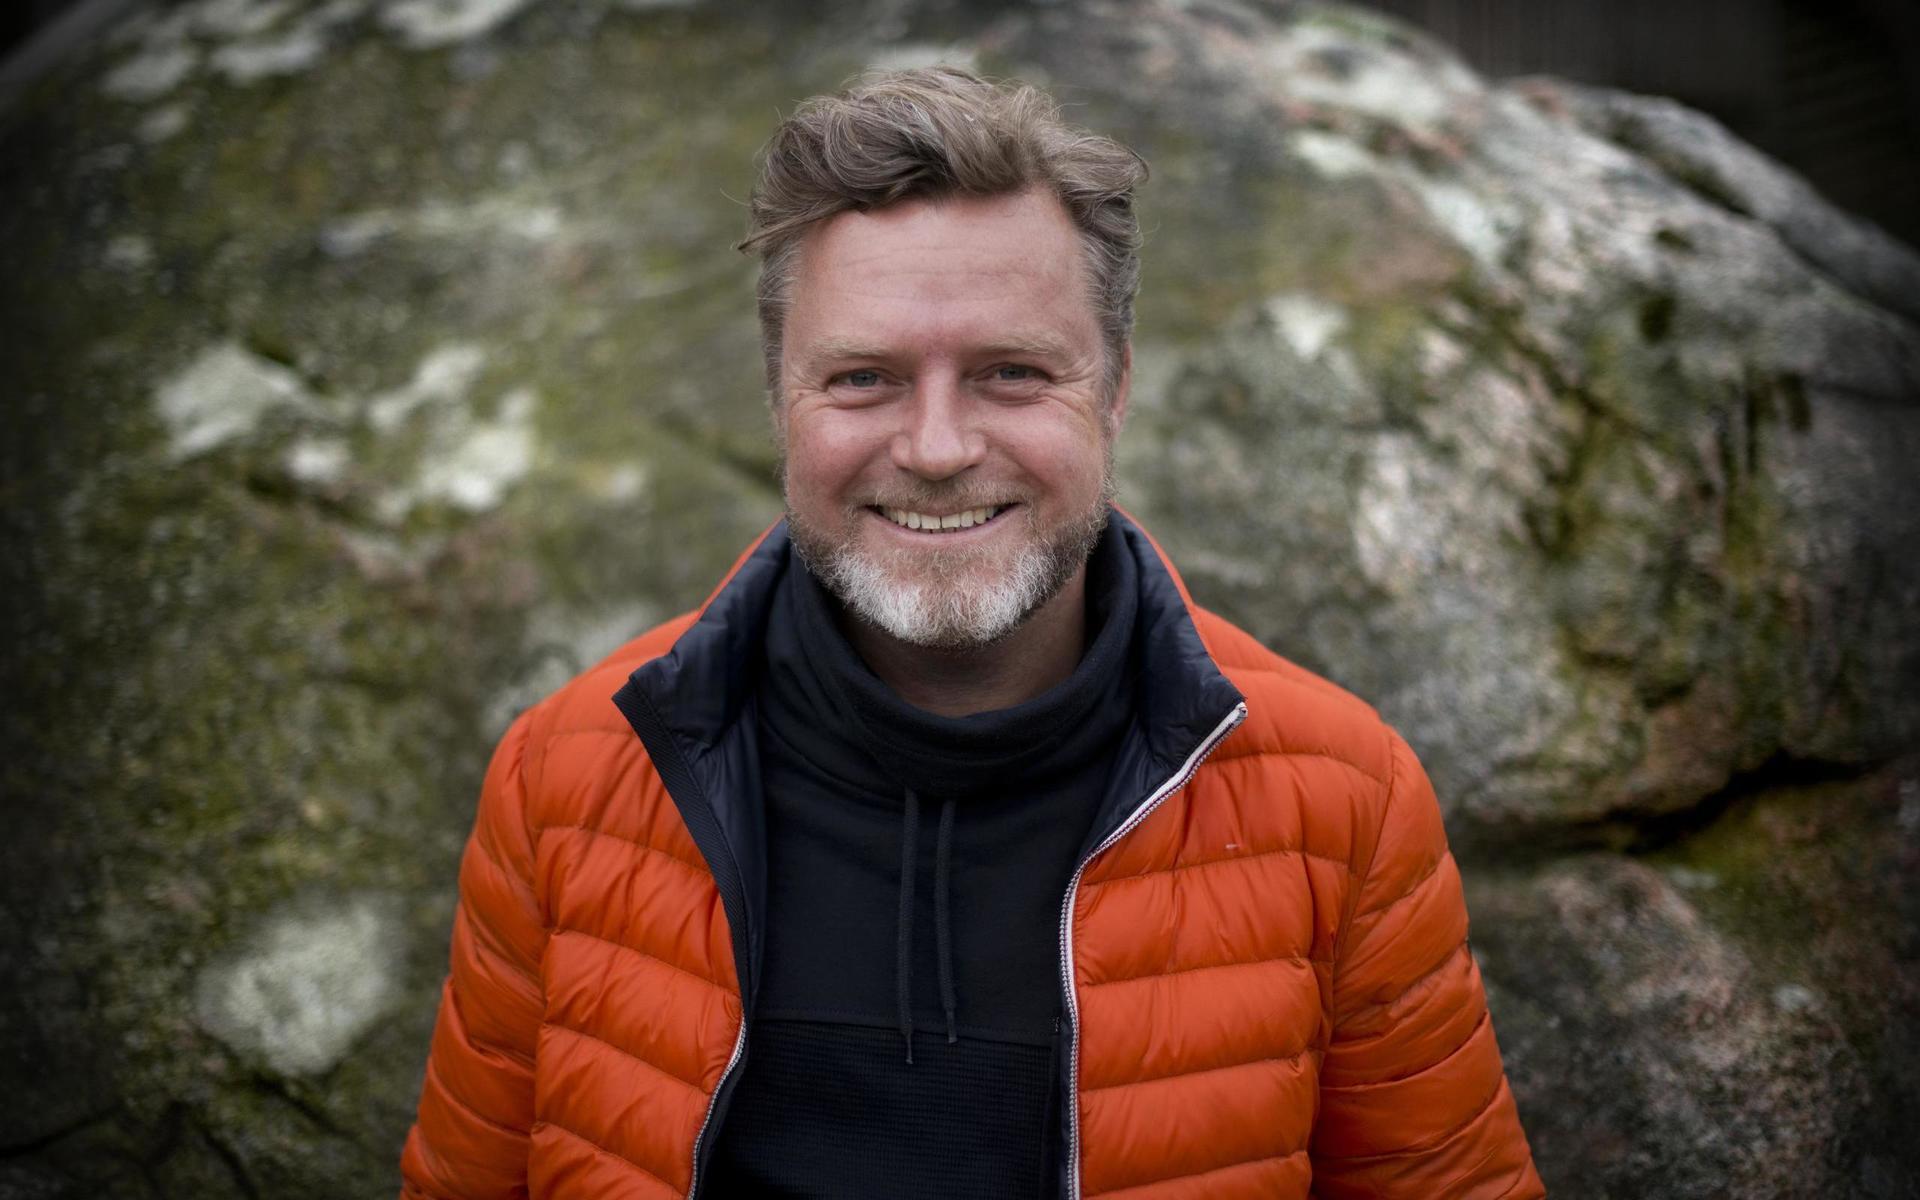 Entreprenören och IT-pionjären Johan Staël von Holstein från Halmstad är en stor del av filmen och en av anledningarna till Christian Albinssons intresse för IT-bubblan och period under senare delen av 1990-talet och några år in på 2000-talet.